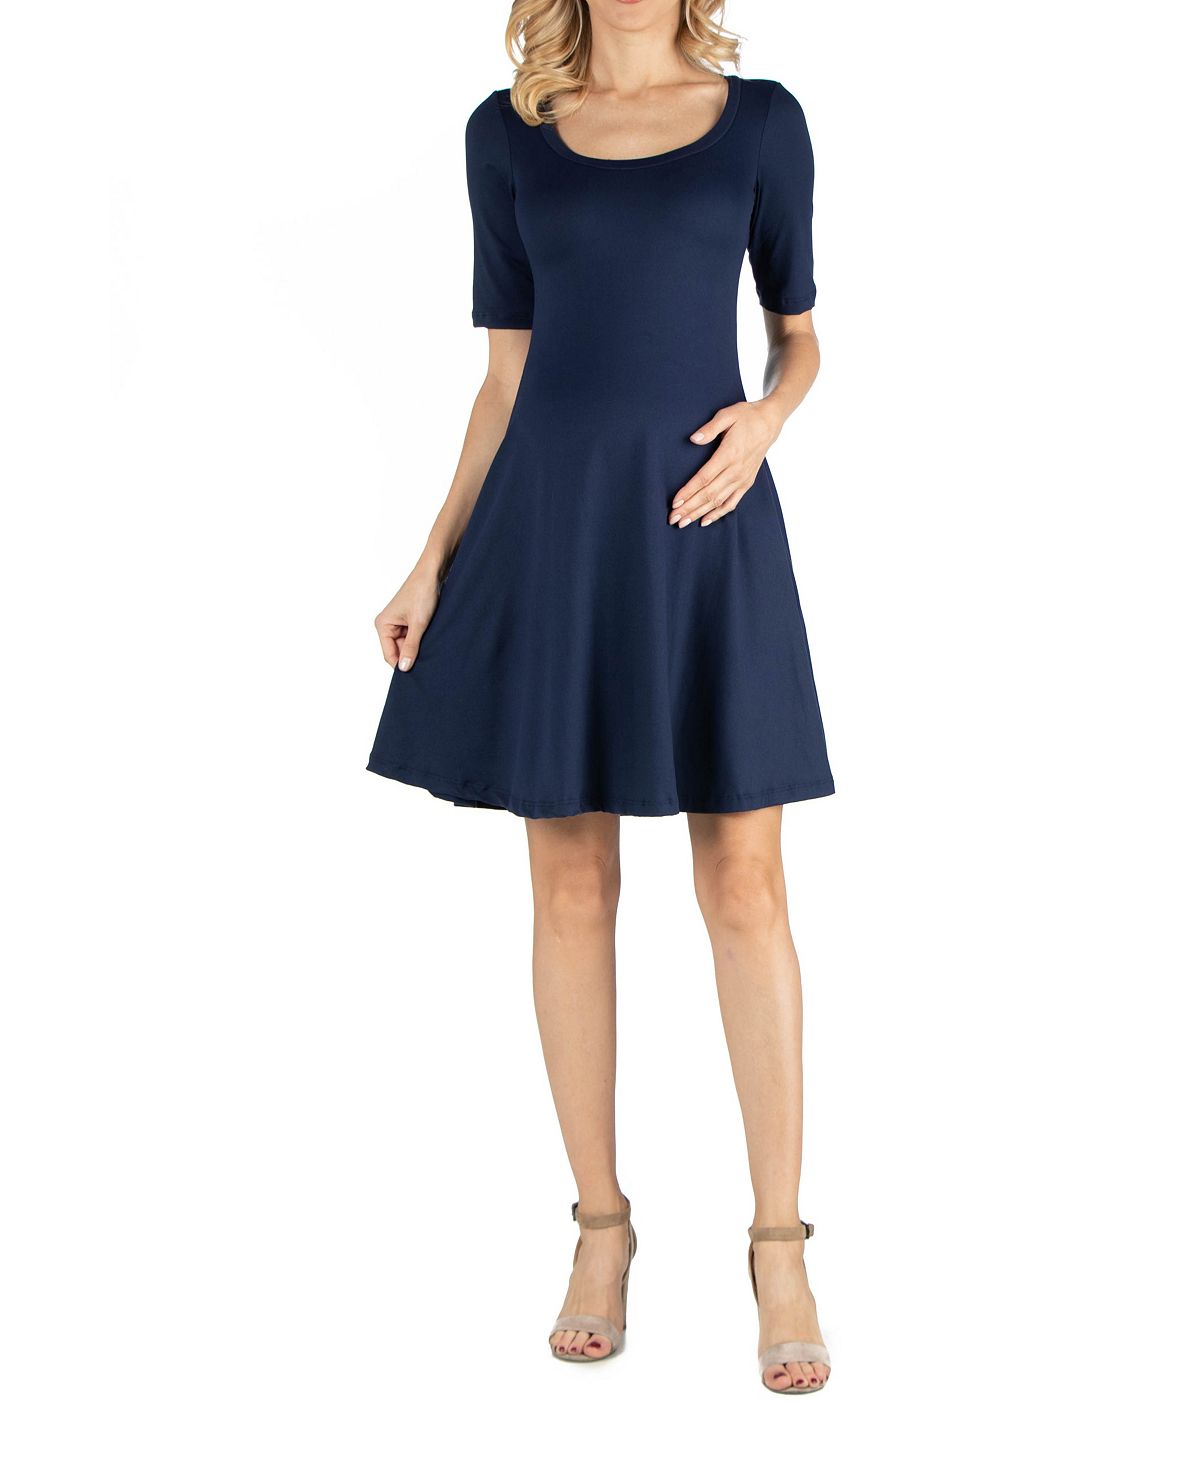 Платье для беременных длиной до колена с рукавами до локтя 24seven Comfort Apparel, темно-синий